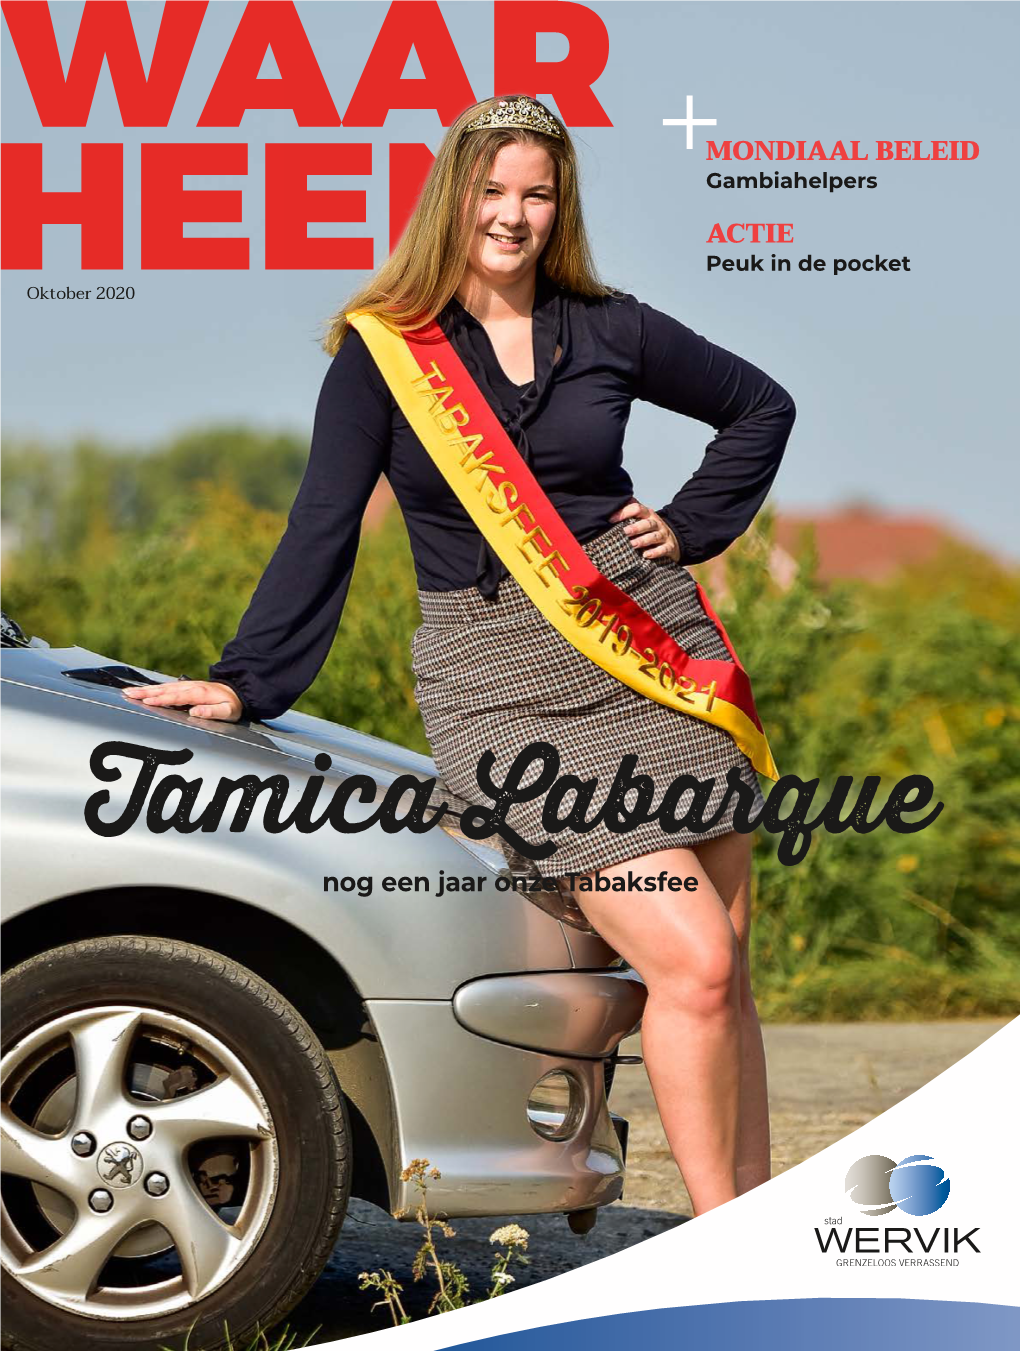 Tamica Labarque Nog Een Jaar Onze Tabaksfee EERSTE WOORD Zet Jouw Sportieve FEESTWEEKEND Helden in De Bloemen 9-10-11 OKTOBER: FEEST in GELUWE